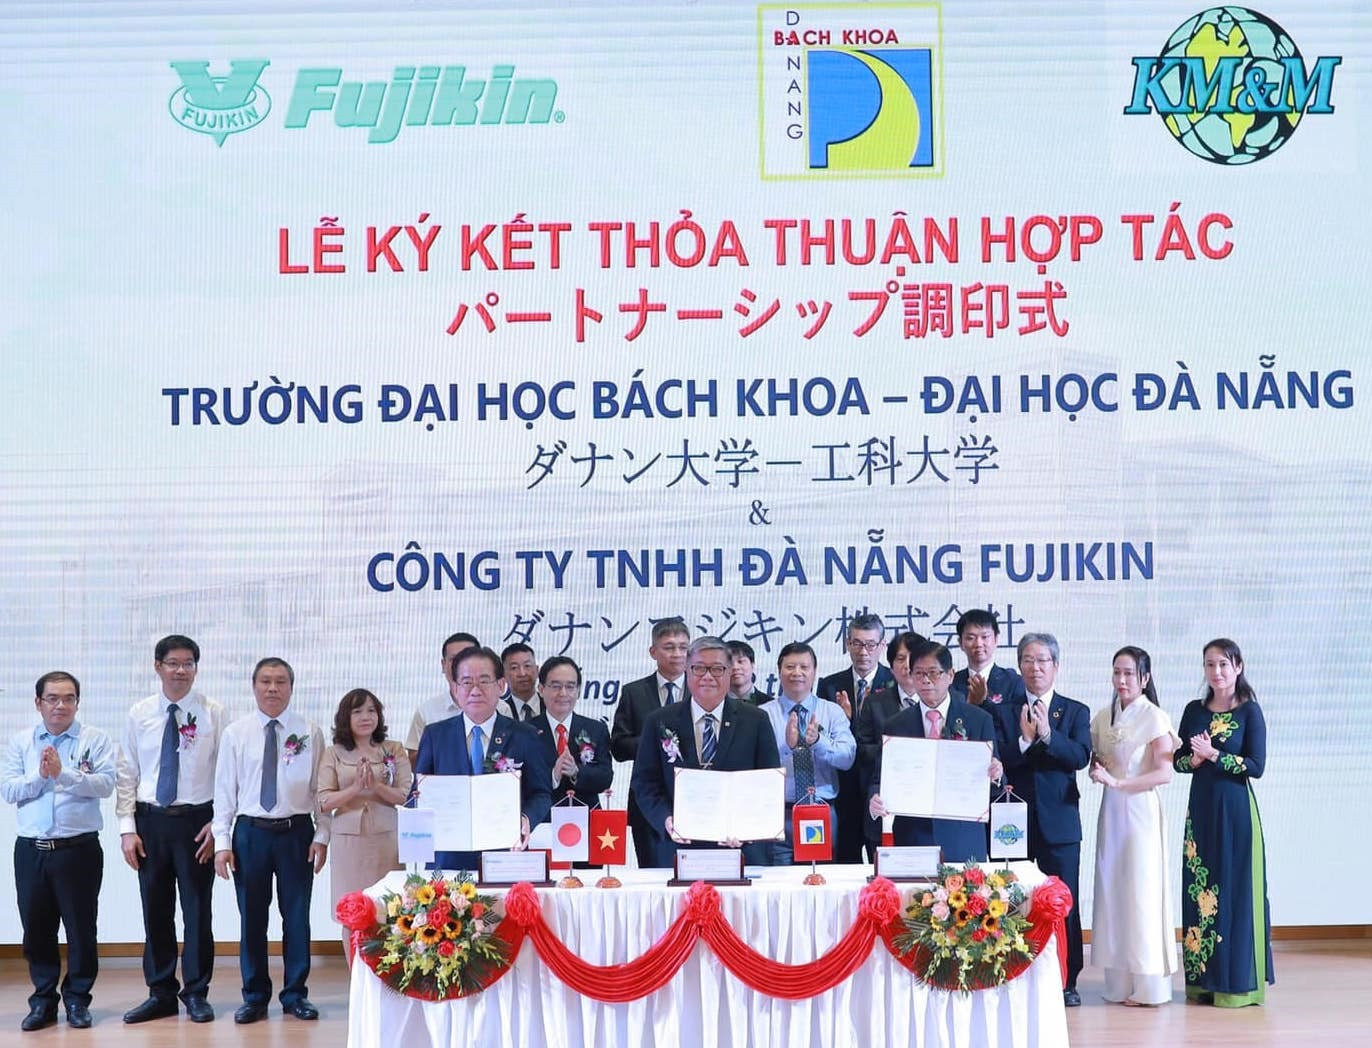 Trường Đại học Bách khoa Đà Nẵng ký kết thỏa thuận hợp tác với Công ty TNHH Đà Nẵng Fujikin, thuộc Tập đoàn Fujikin Incorporated, Nhật Bản. Ảnh: C.T.V